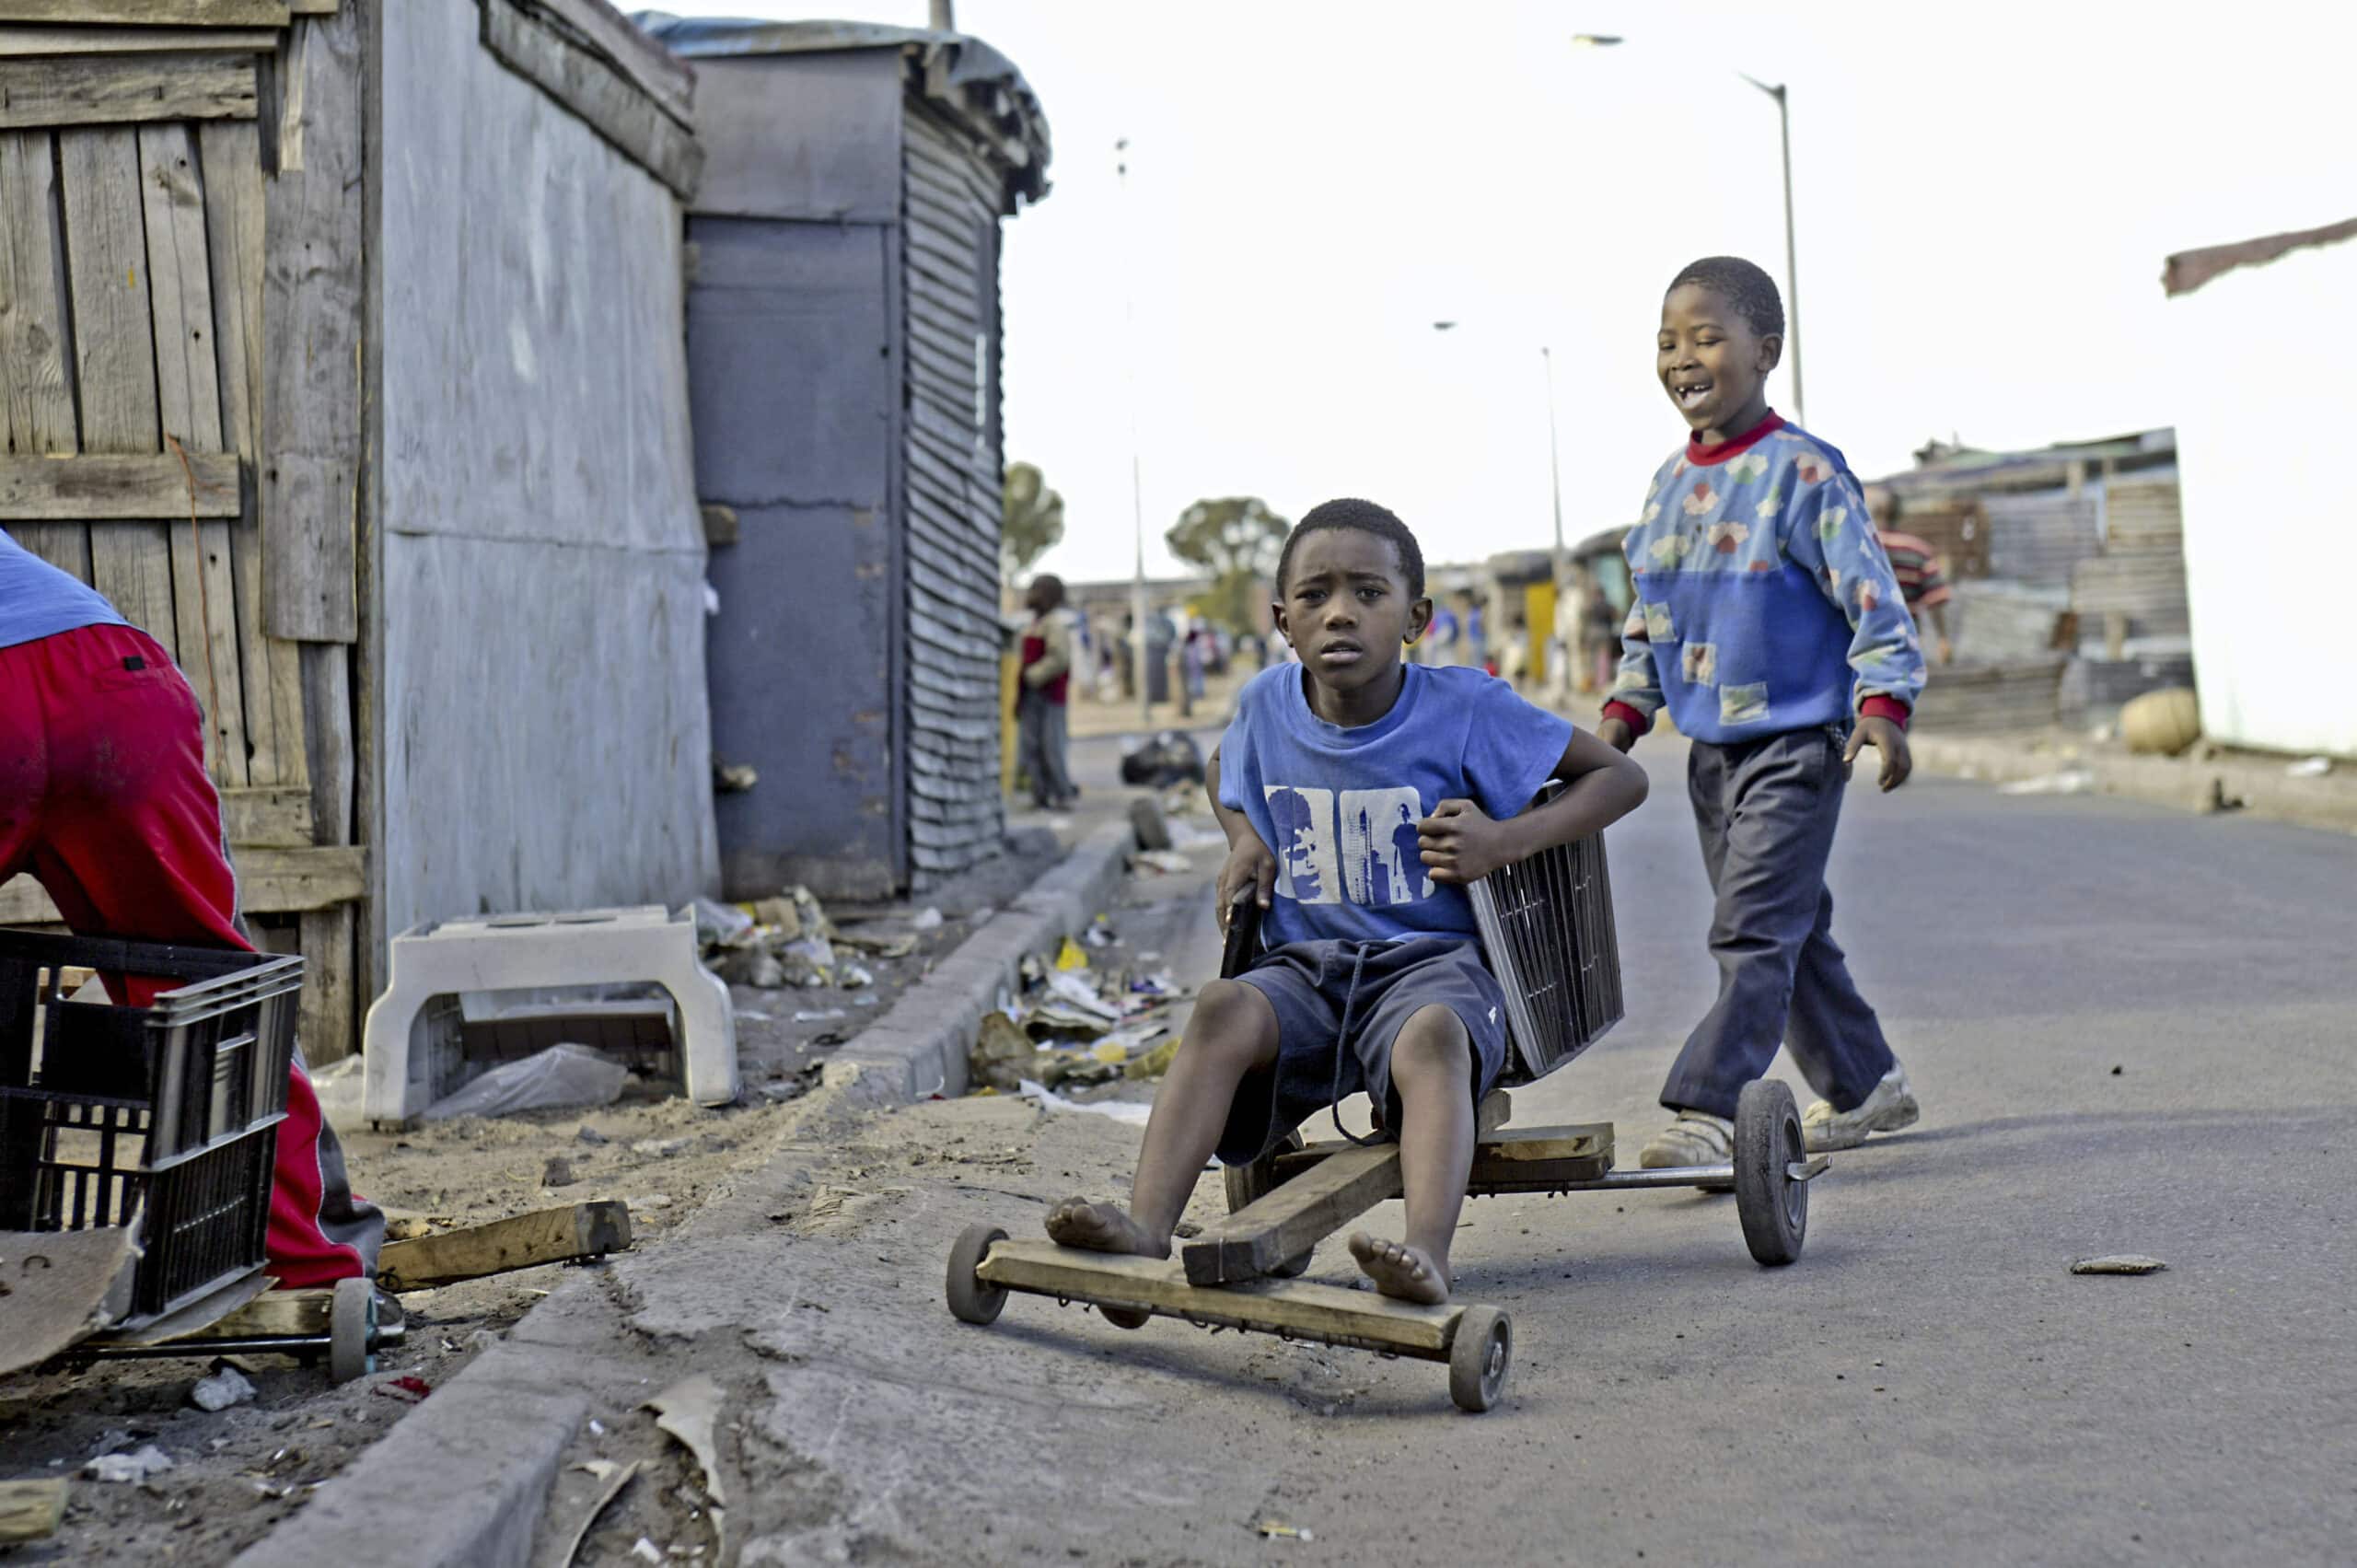 Zwei Jungen spielen mit einem selbstgebauten Go-Kart aus Holz auf einer staubigen Straße. Ein Junge schiebt das Kart an, ein anderer sitzt darin und lenkt es mit einer Schnur. Vorstädtische Kulisse mit informellen Strukturen. © Fotografie Tomas Rodriguez